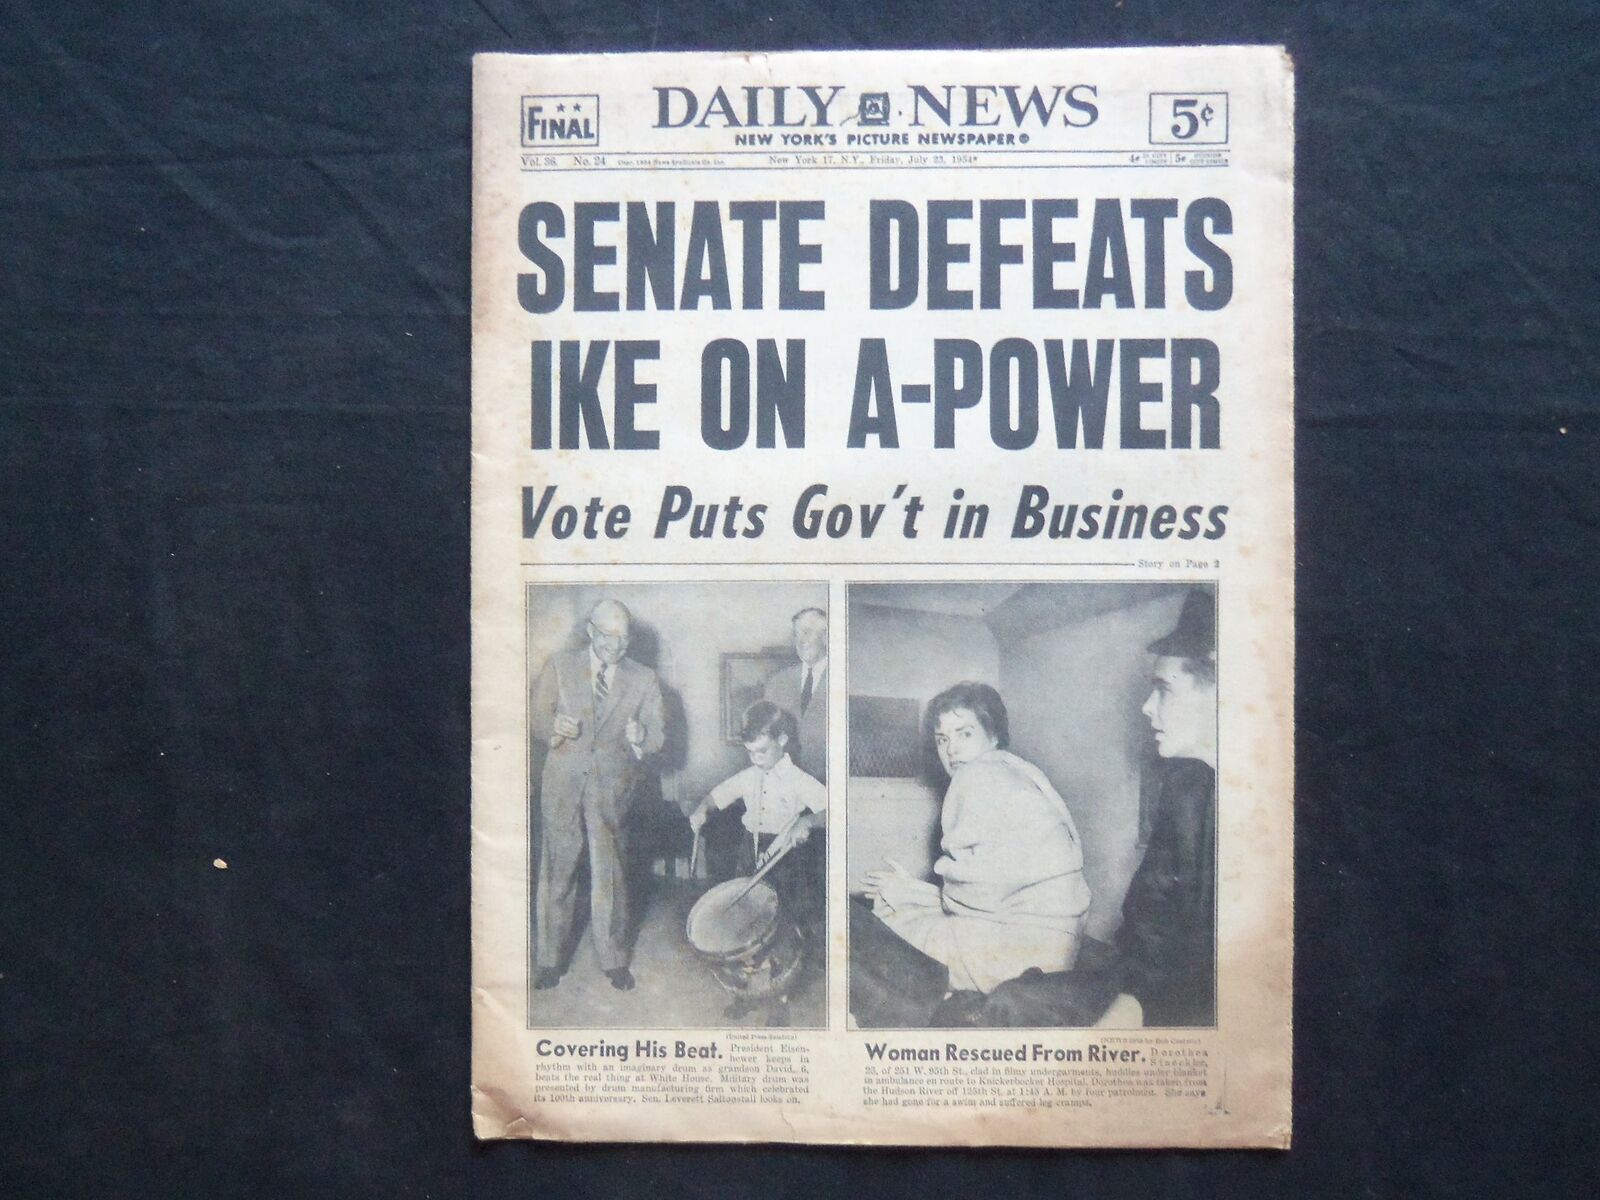 1954 JULY 23 NY DAILY NEWS NEWSPAPER - SENATE DEFEATS IKE ON A-POWER - NP 2507